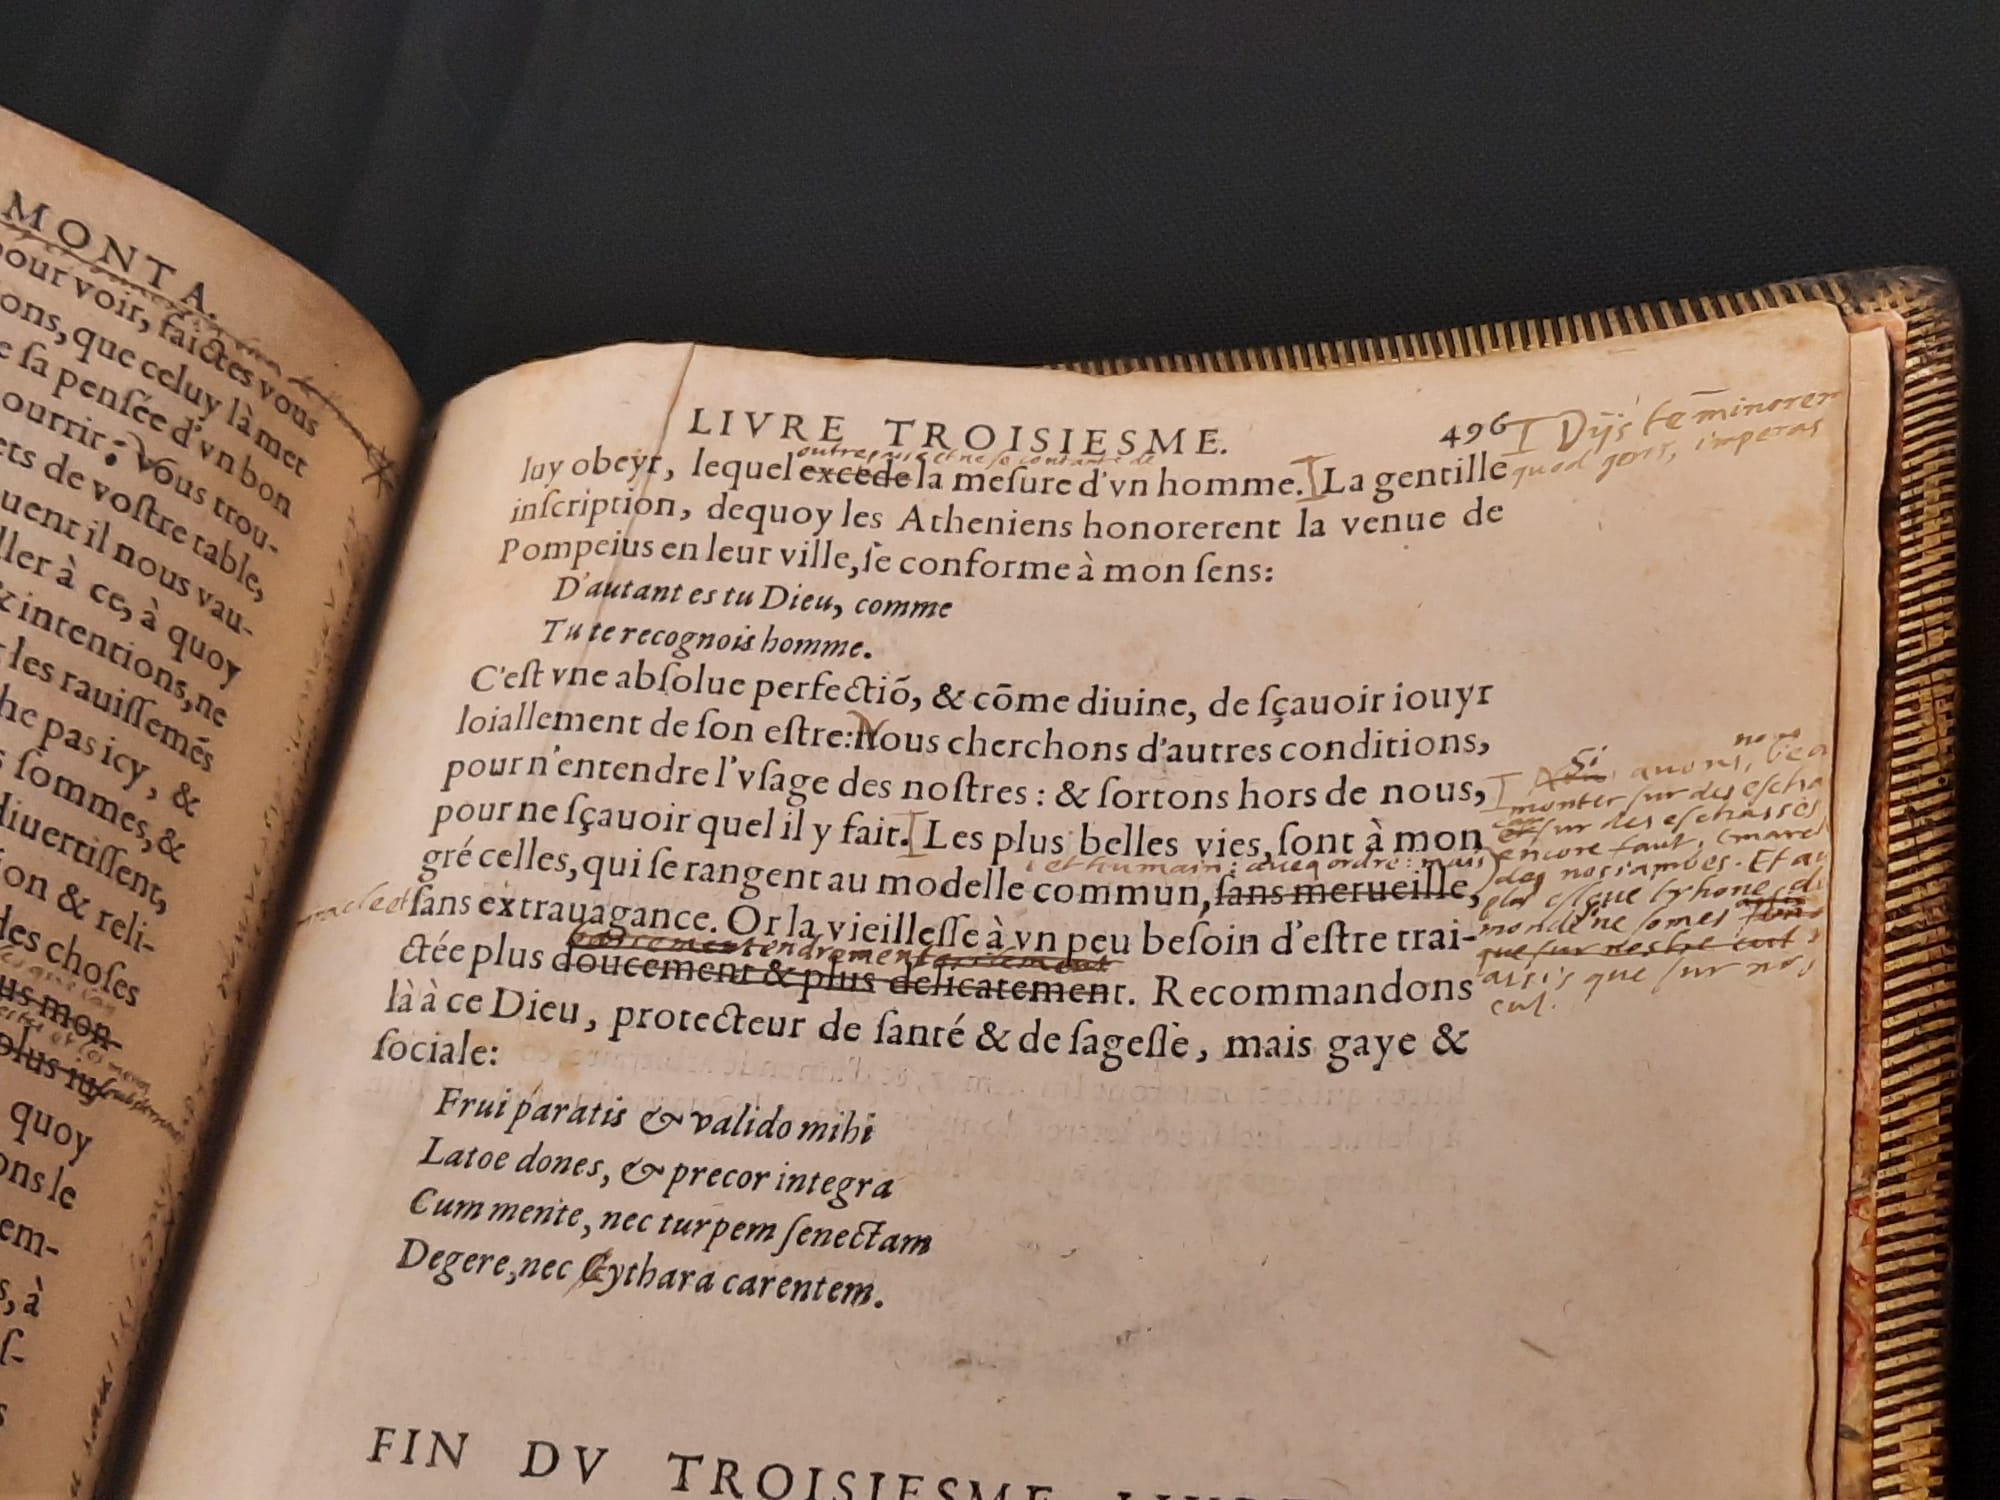 Exemples d'annotations sur la dernière page du manuscrit de Montaigne qui ajoute à la main cette phrase devenue célèbre " « Sur le plus haut trône du monde, on n'est jamais assis que sur son cul."